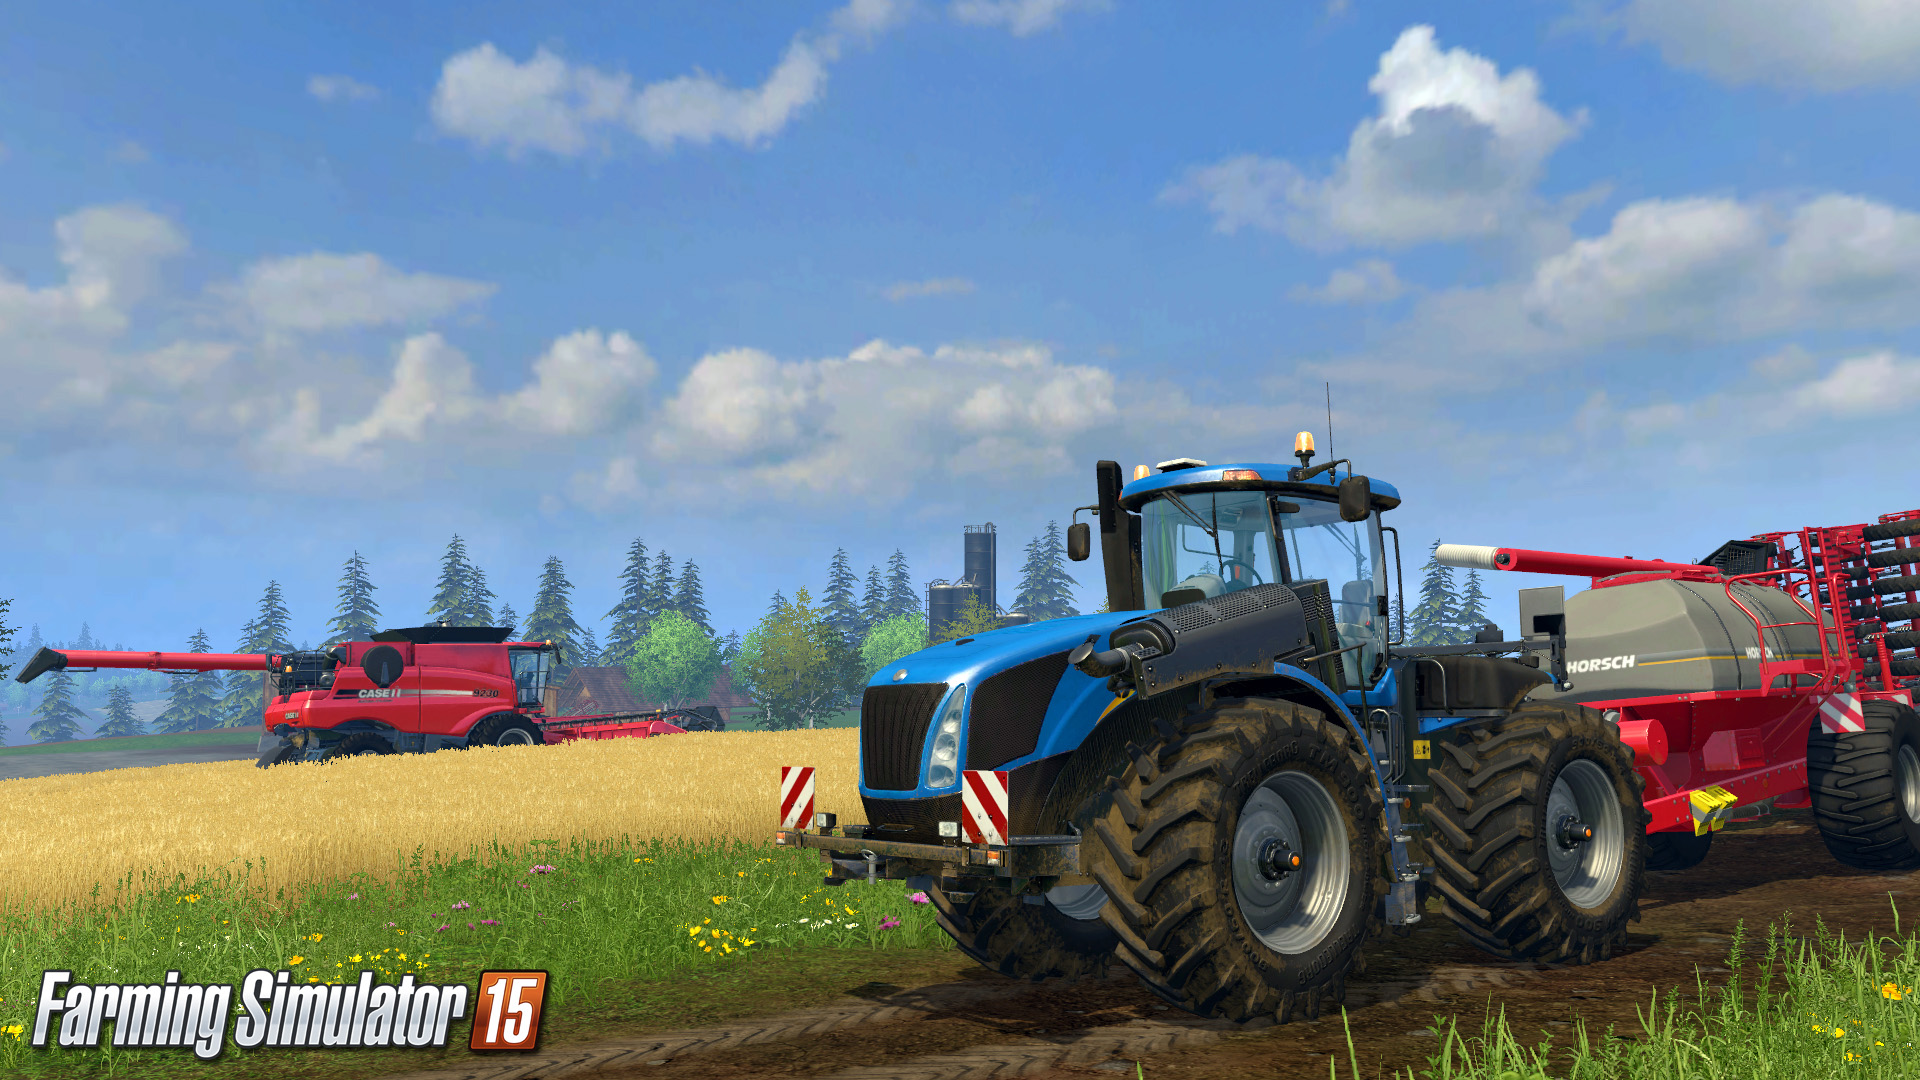 Jogo Tractor Farming Simulator no Jogos 360